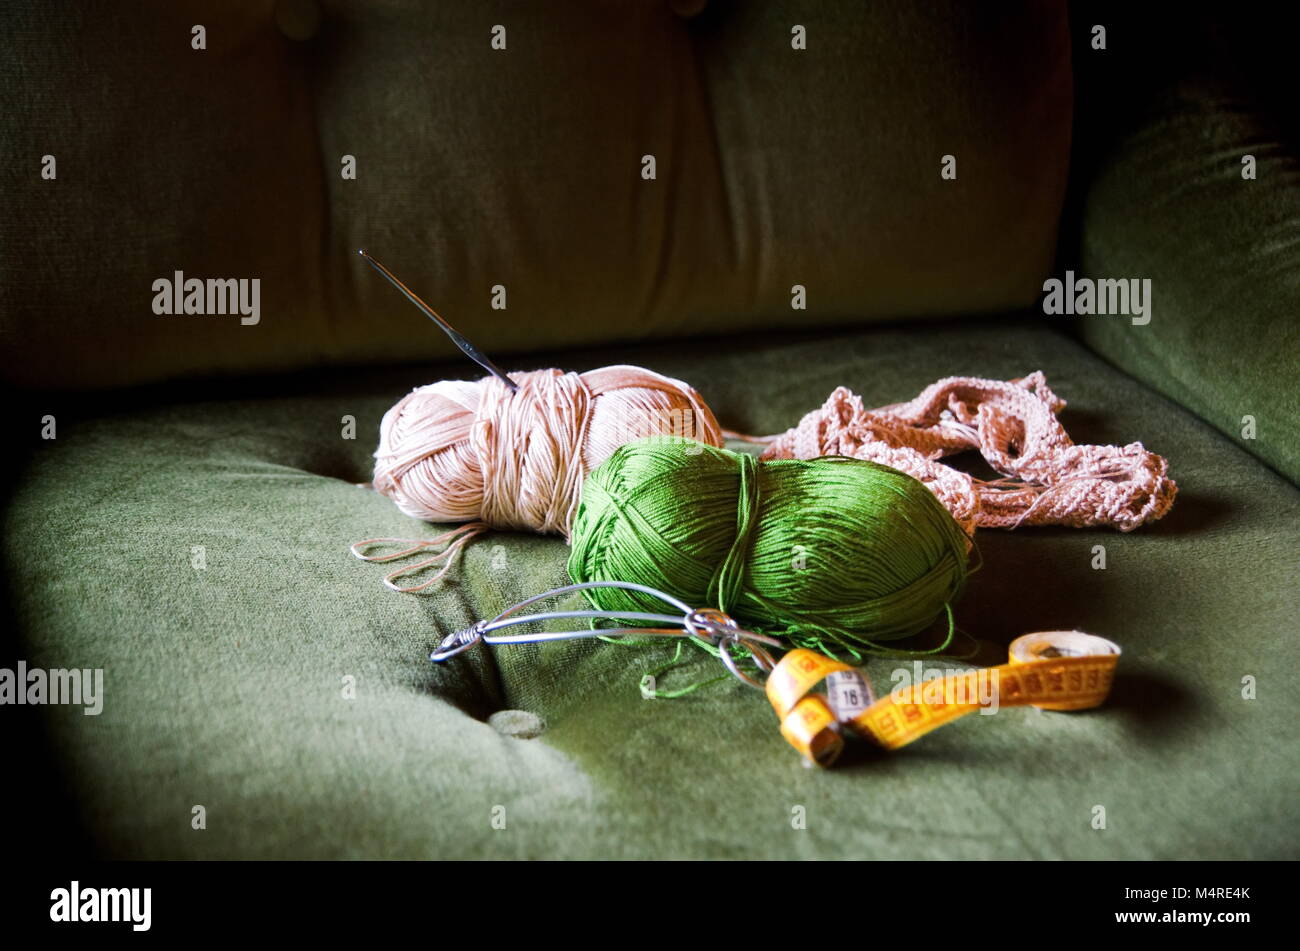 Strumenti a crochet su un comodo divano verde sedia Foto Stock